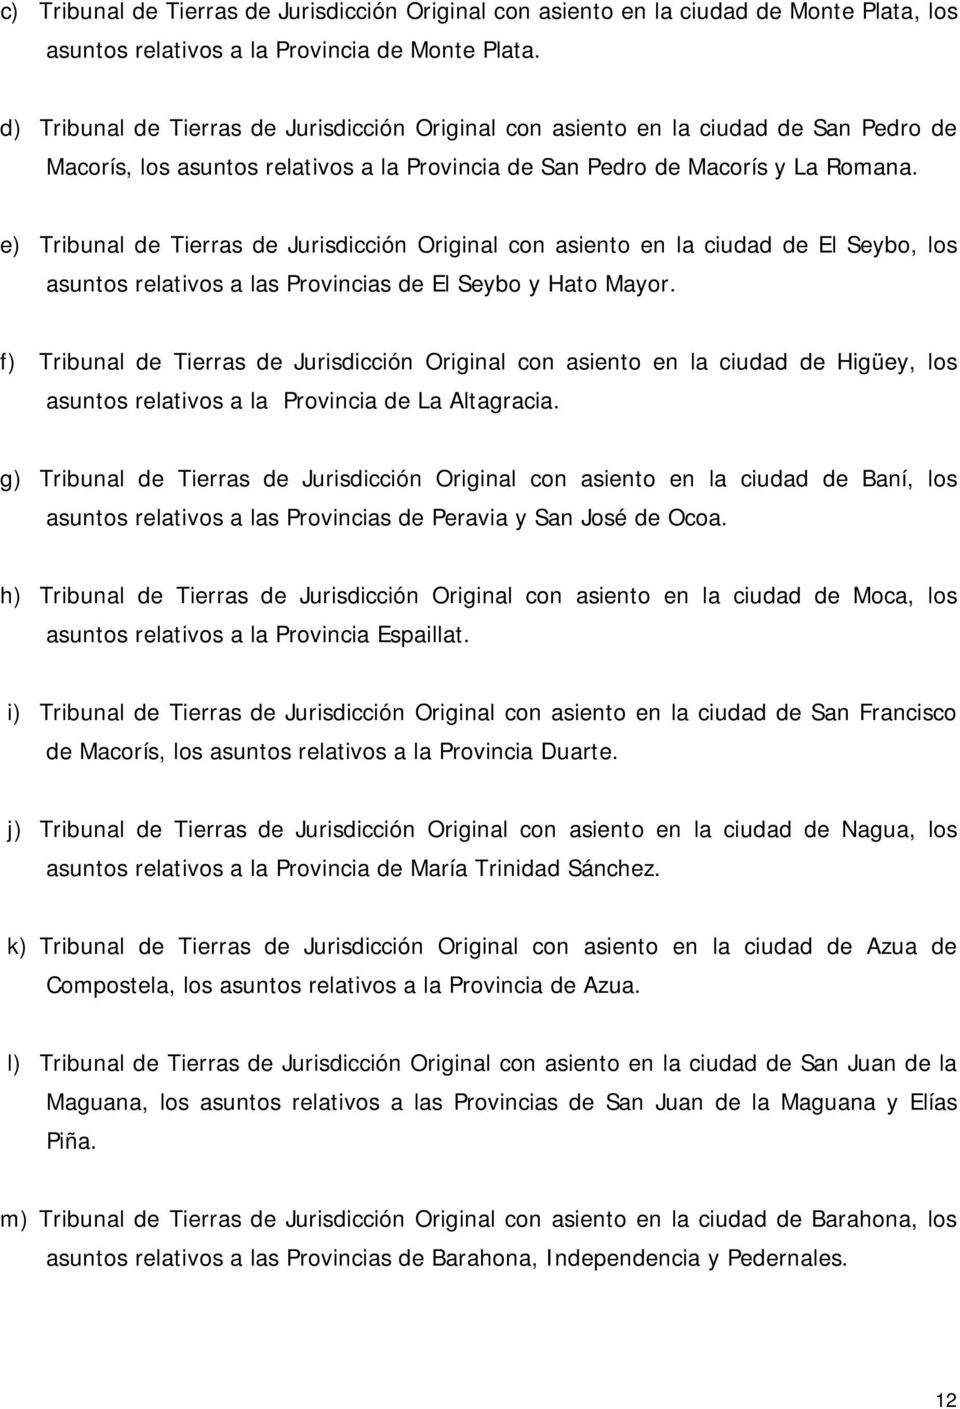 e) Tribunal de Tierras de Jurisdicción Original con asiento en la ciudad de El Seybo, los asuntos relativos a las Provincias de El Seybo y Hato Mayor.